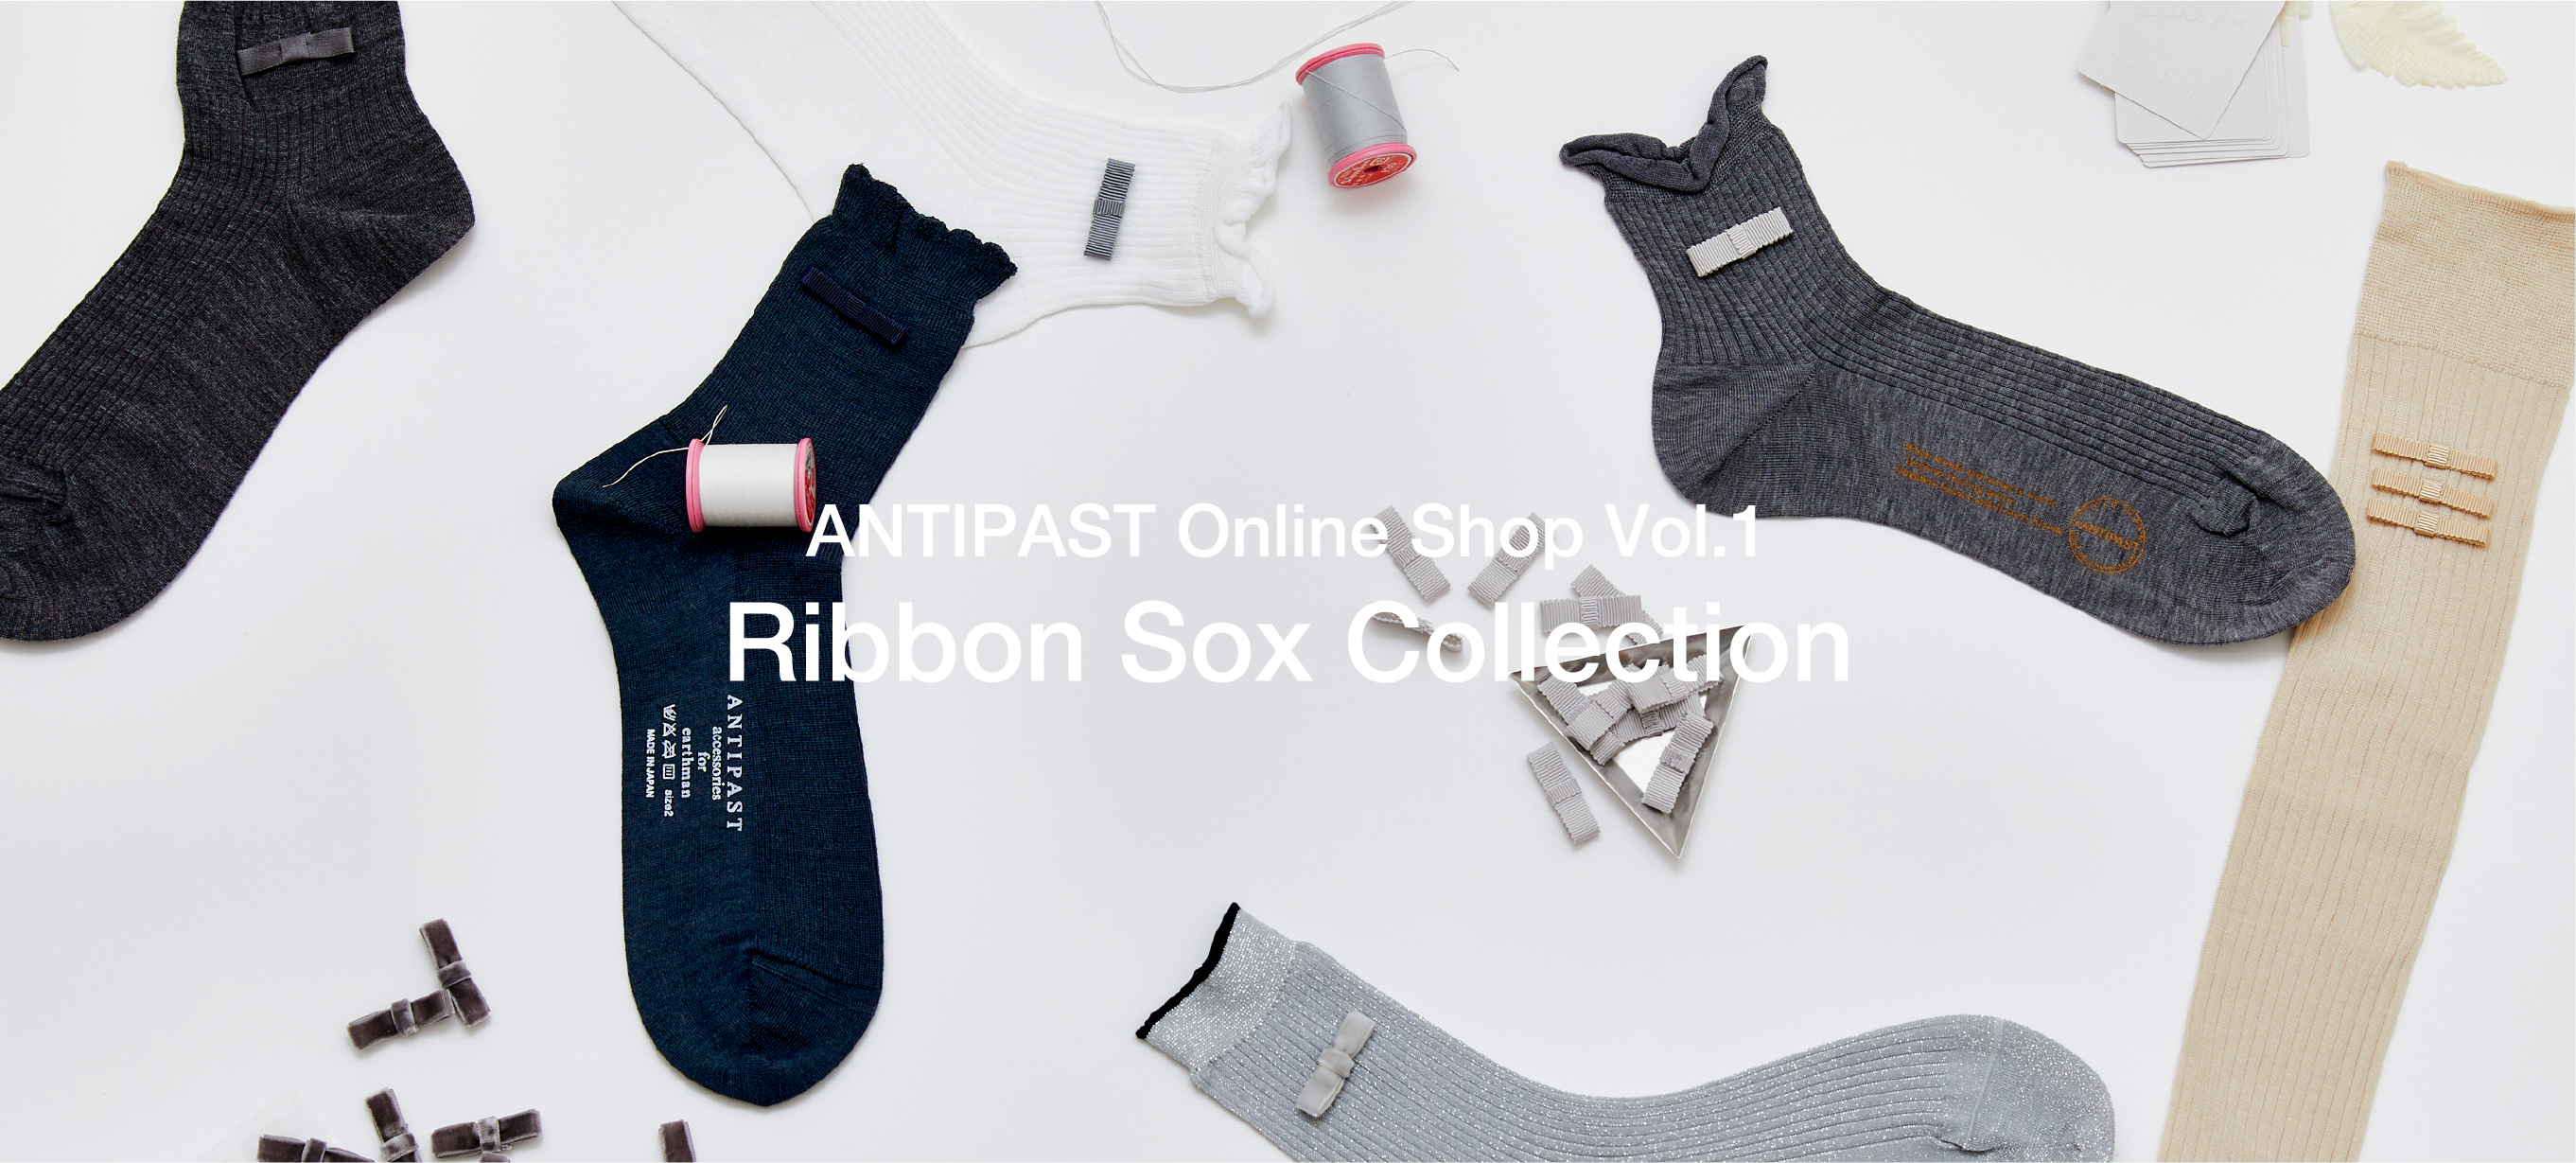 Ribbon Sox Collection